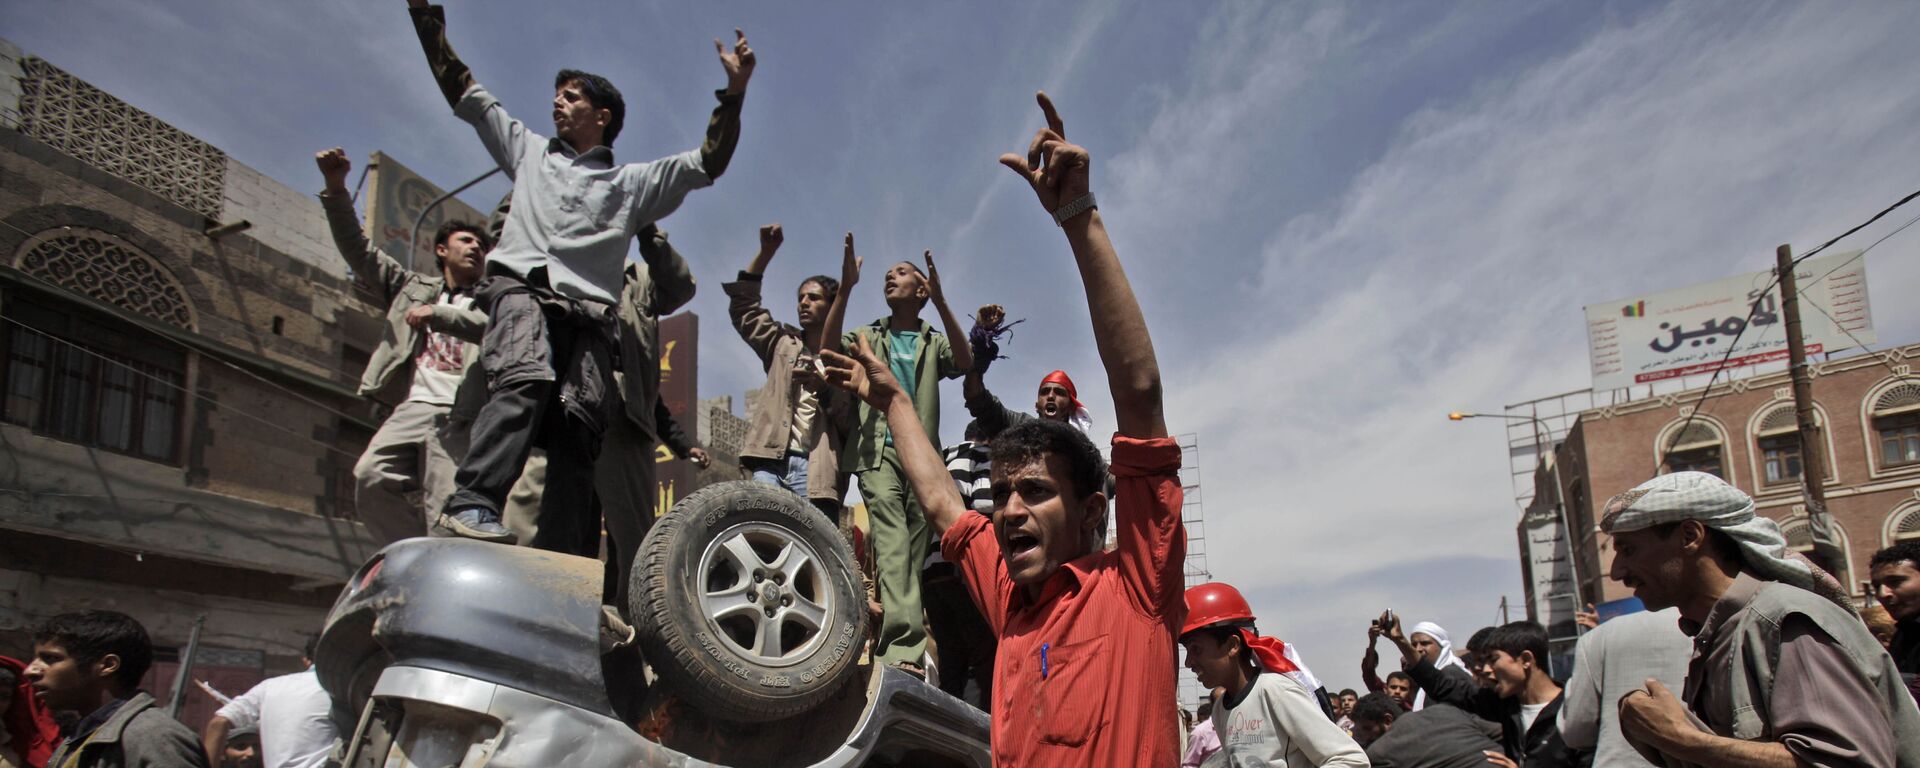 Protestas en Yemen en 2011 - Sputnik Mundo, 1920, 20.01.2021